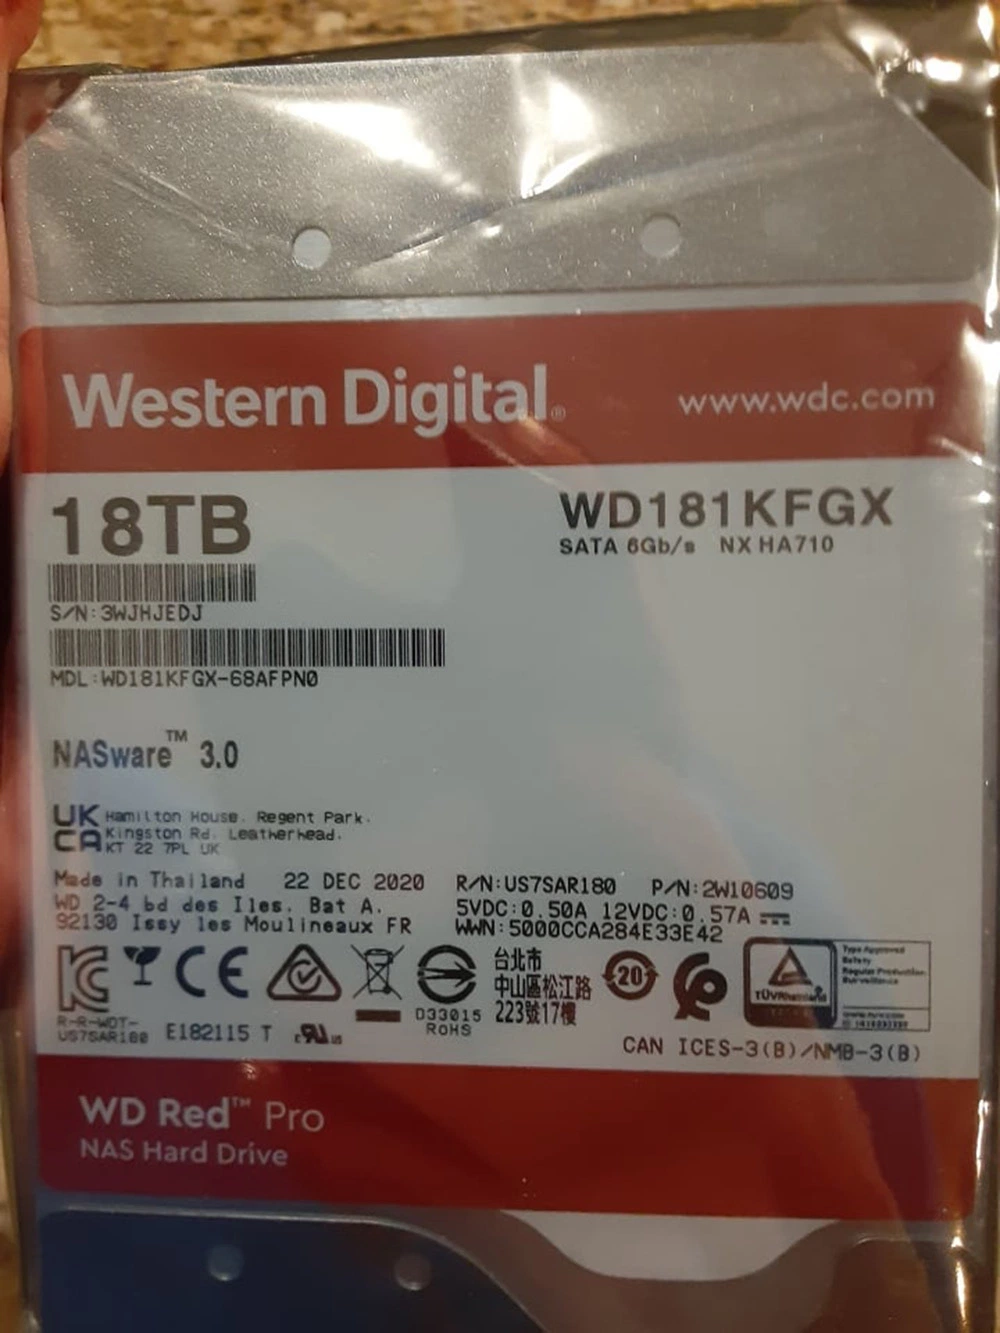 Western Digital Red PRO 18 Tb SSD/HDD 7200rpm SATA 6GB/S Internal Nas Hard Drive (WD181KFGX) Wd SSD/HDD